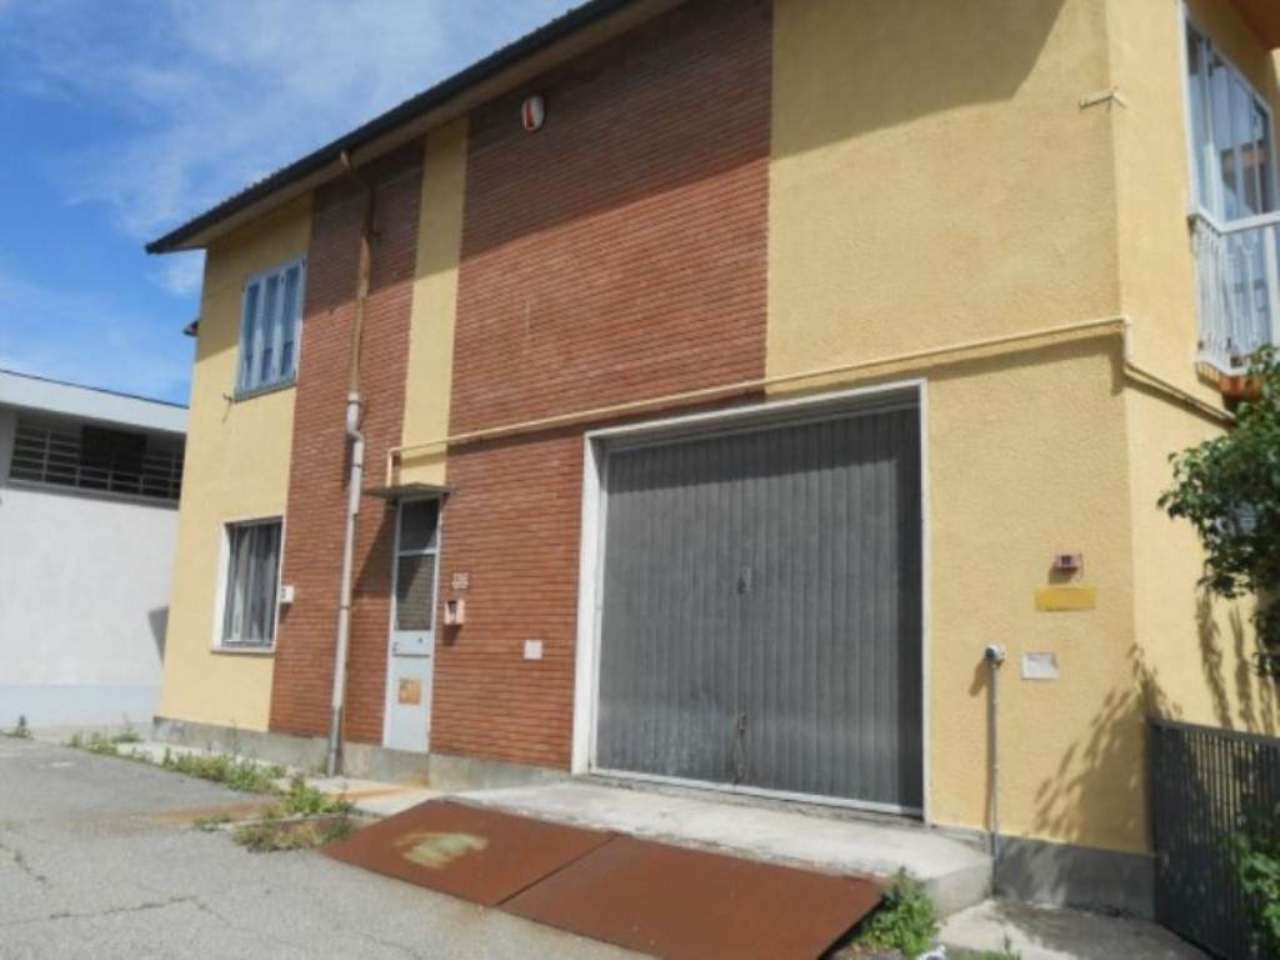 Laboratorio in affitto a Rivoli, 9999 locali, zona Località: APochiMinutiDaCorsoFrancia, prezzo € 900 | CambioCasa.it